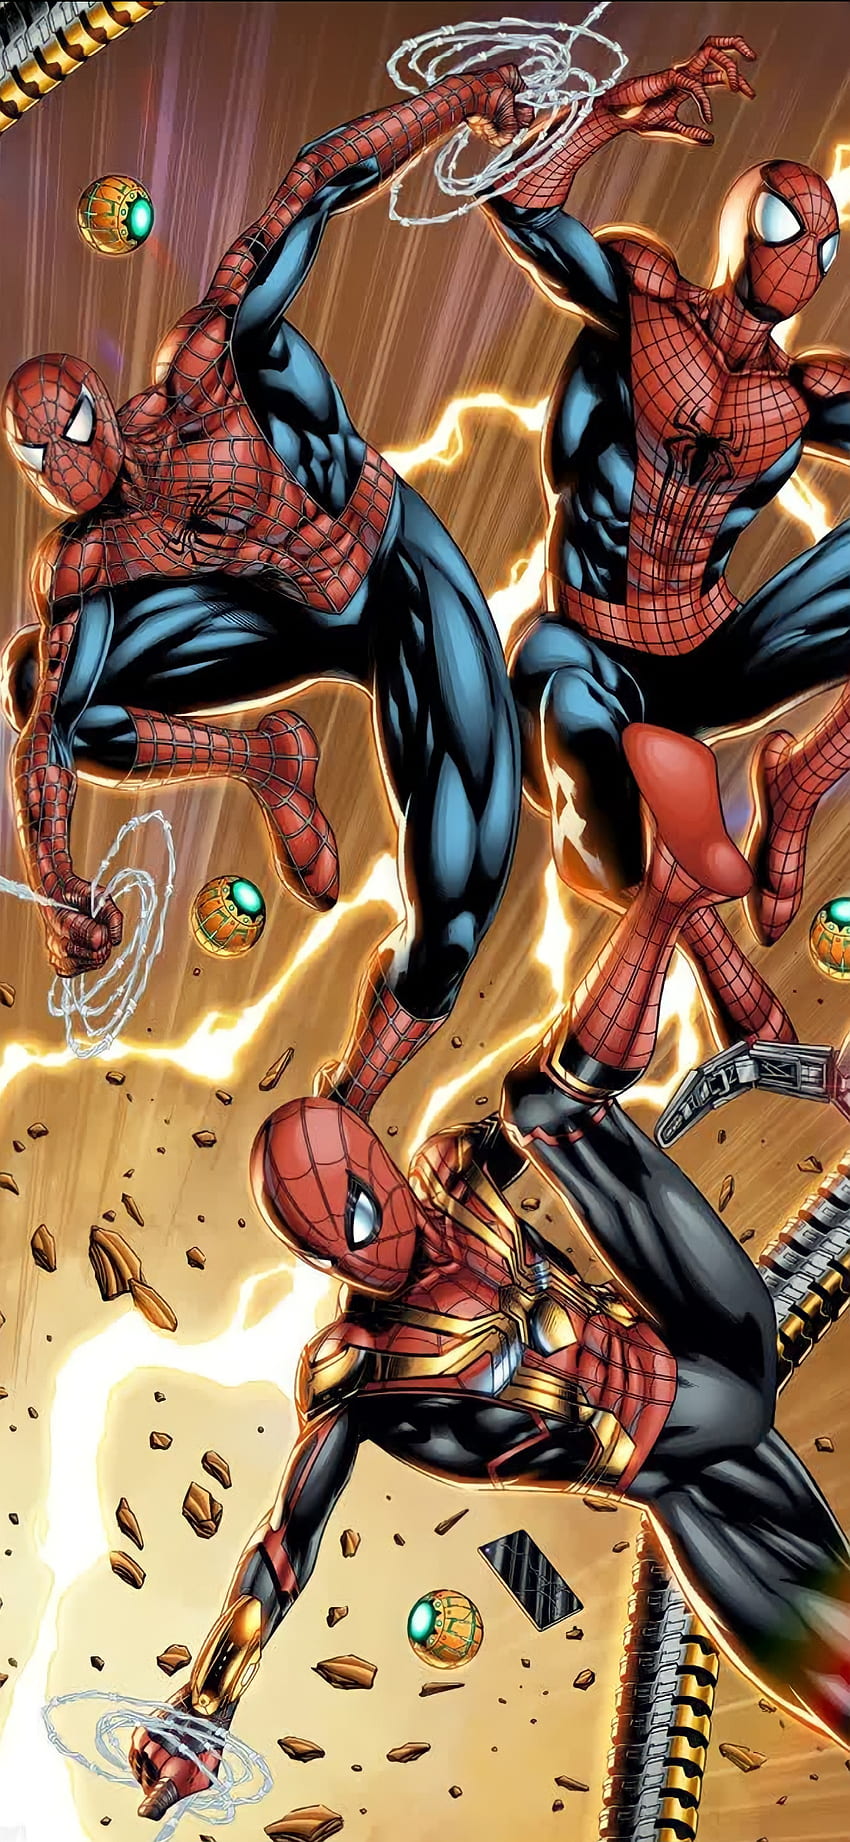 Spider-Man NWH Cómic, Película, Superhéroes, No_way_home, Héroes, Dibujos animados, Historietas, Marvel, Spiderman, Spiderman_no_way_home fondo de pantalla del teléfono